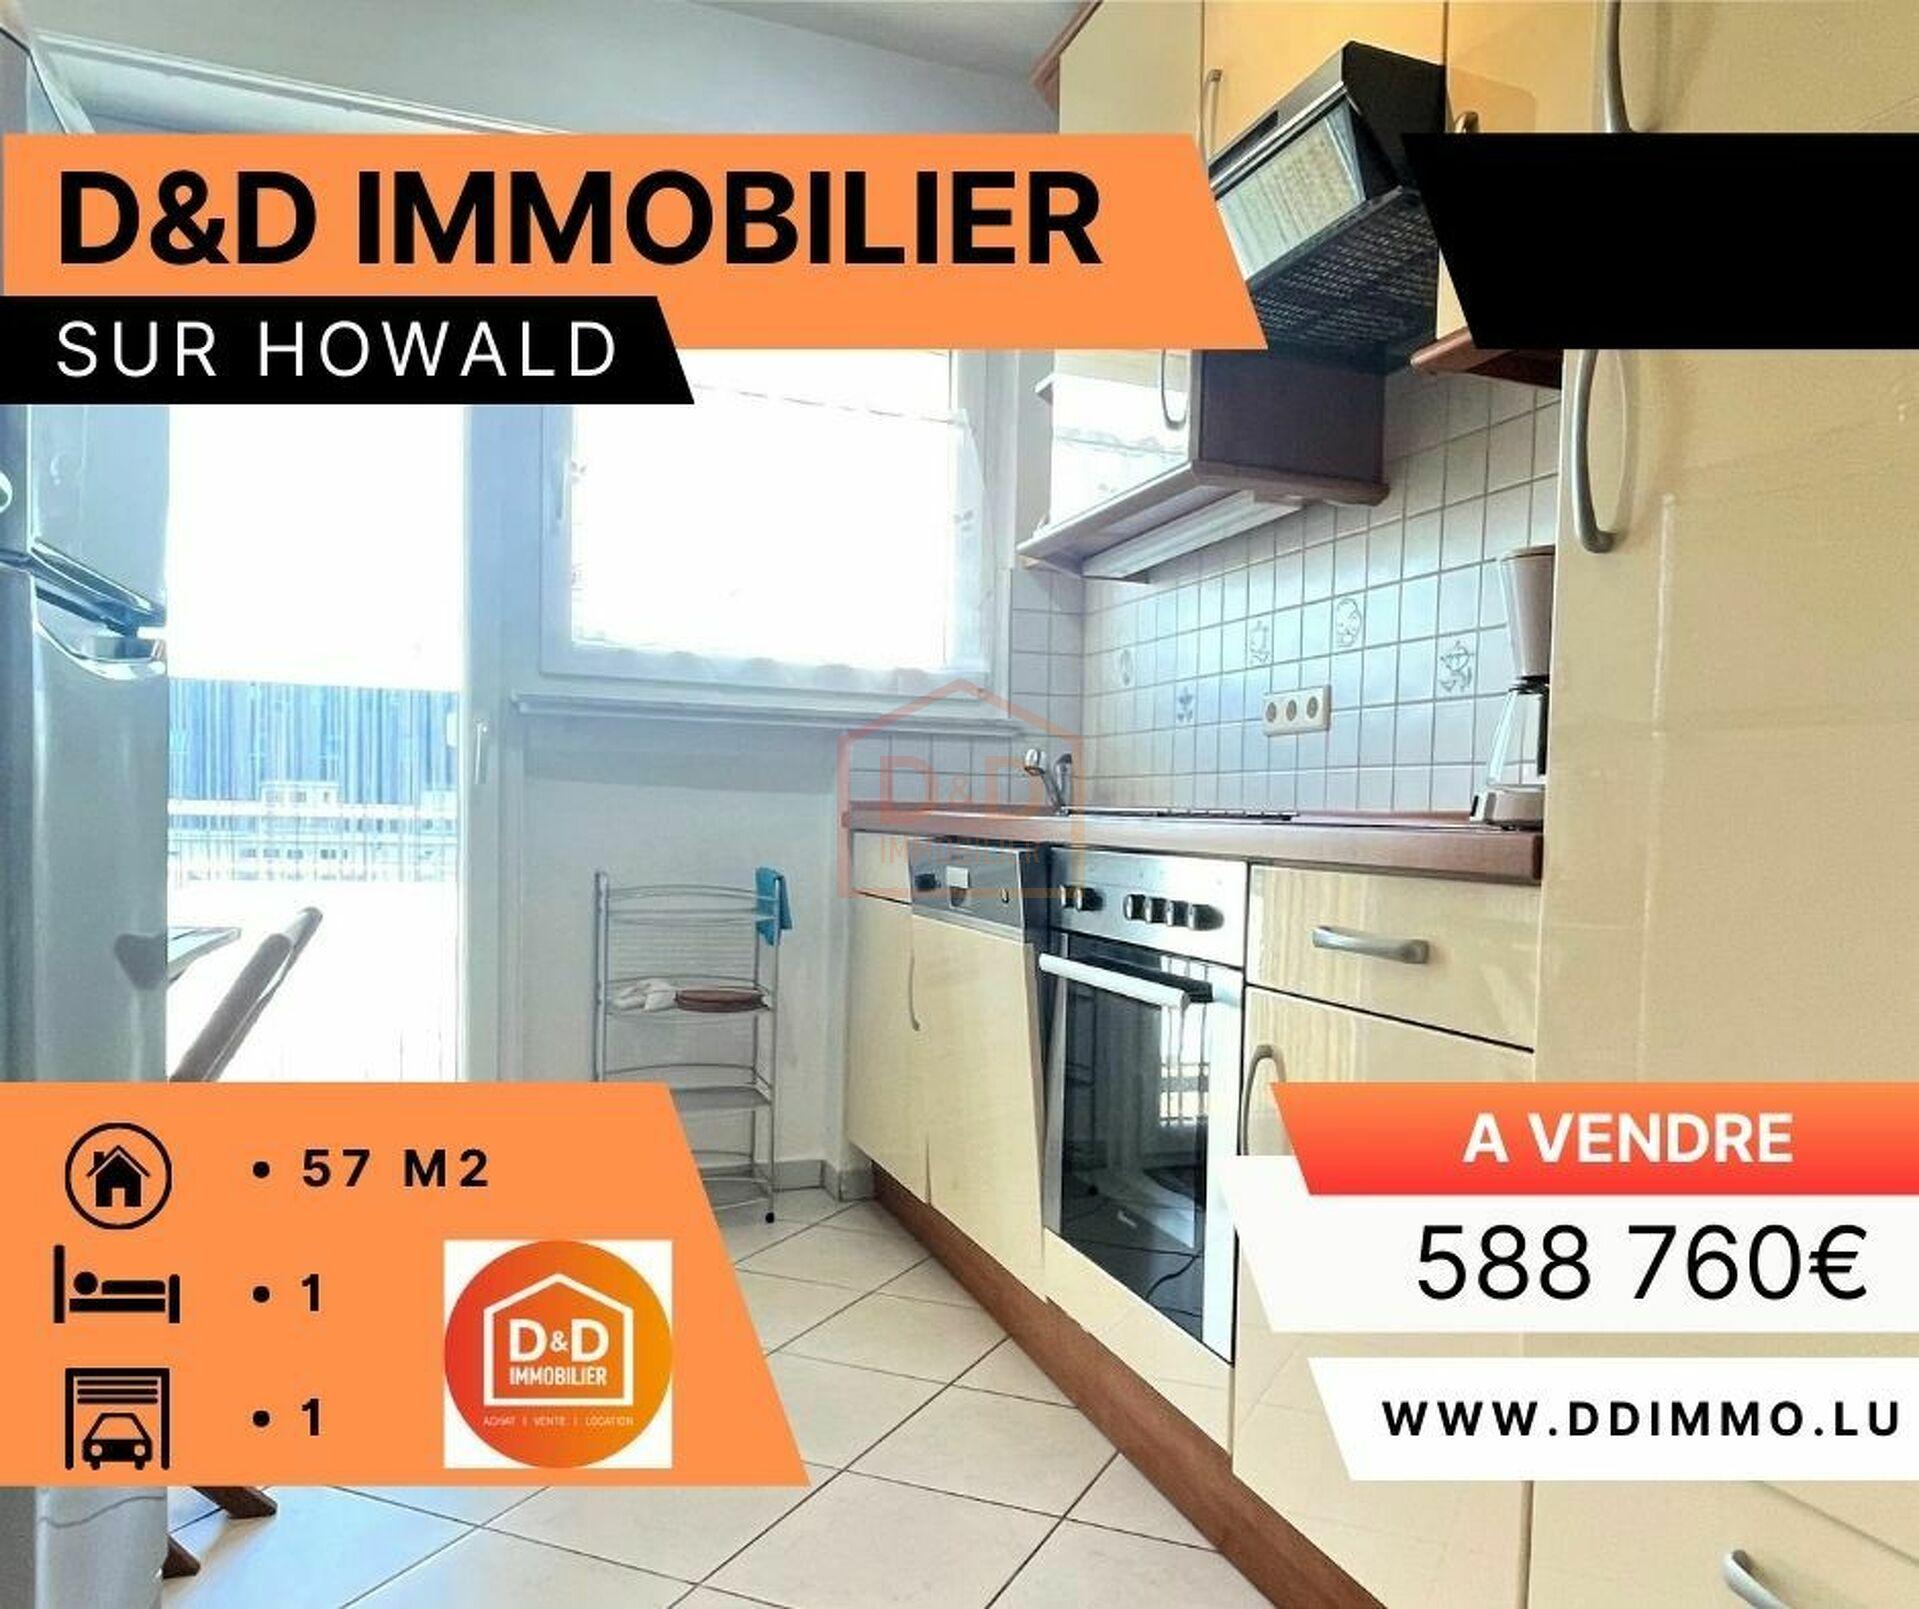 Appartement à Howald, 57 m², 1 chambre, 1 garage, 588 760 €